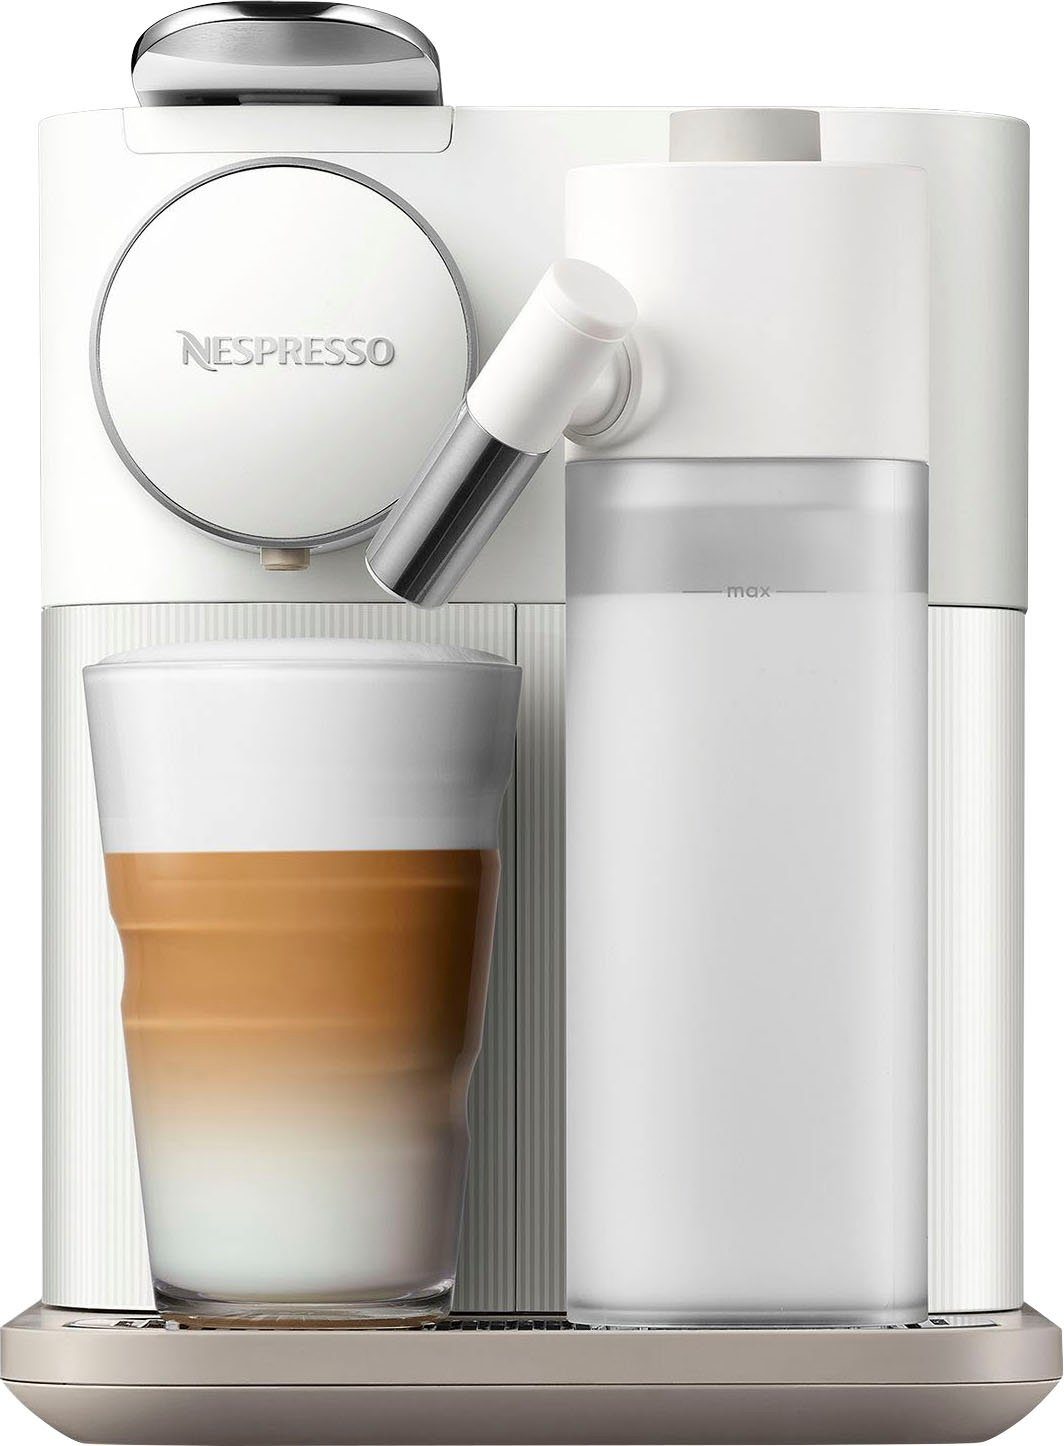 EN640.W inkl. von DeLonghi, Nespresso white, Kapselmaschine Kapseln mit 7 Willkommenspaket